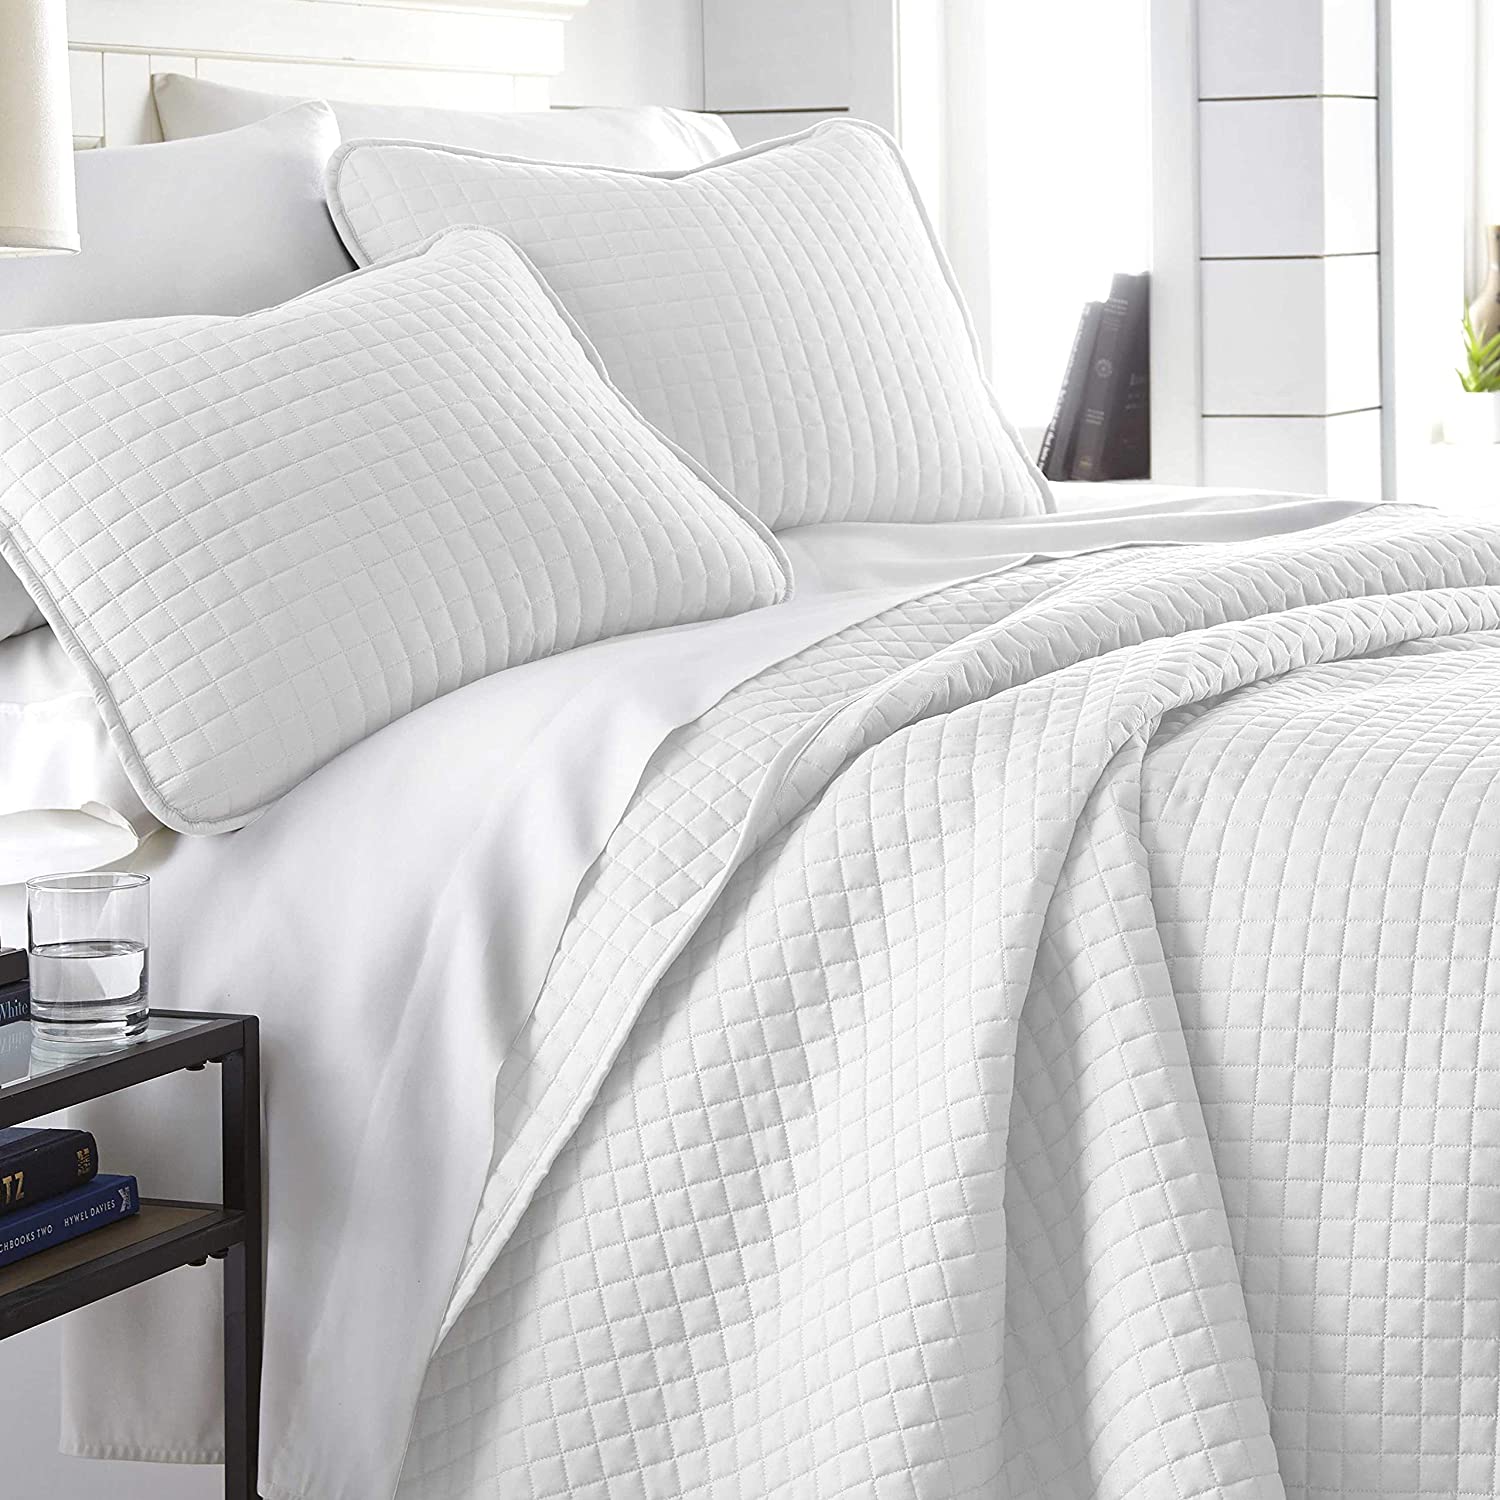 Southshore Fine Living Premium Quilt Collection Luxury Bedding, 3-Piece